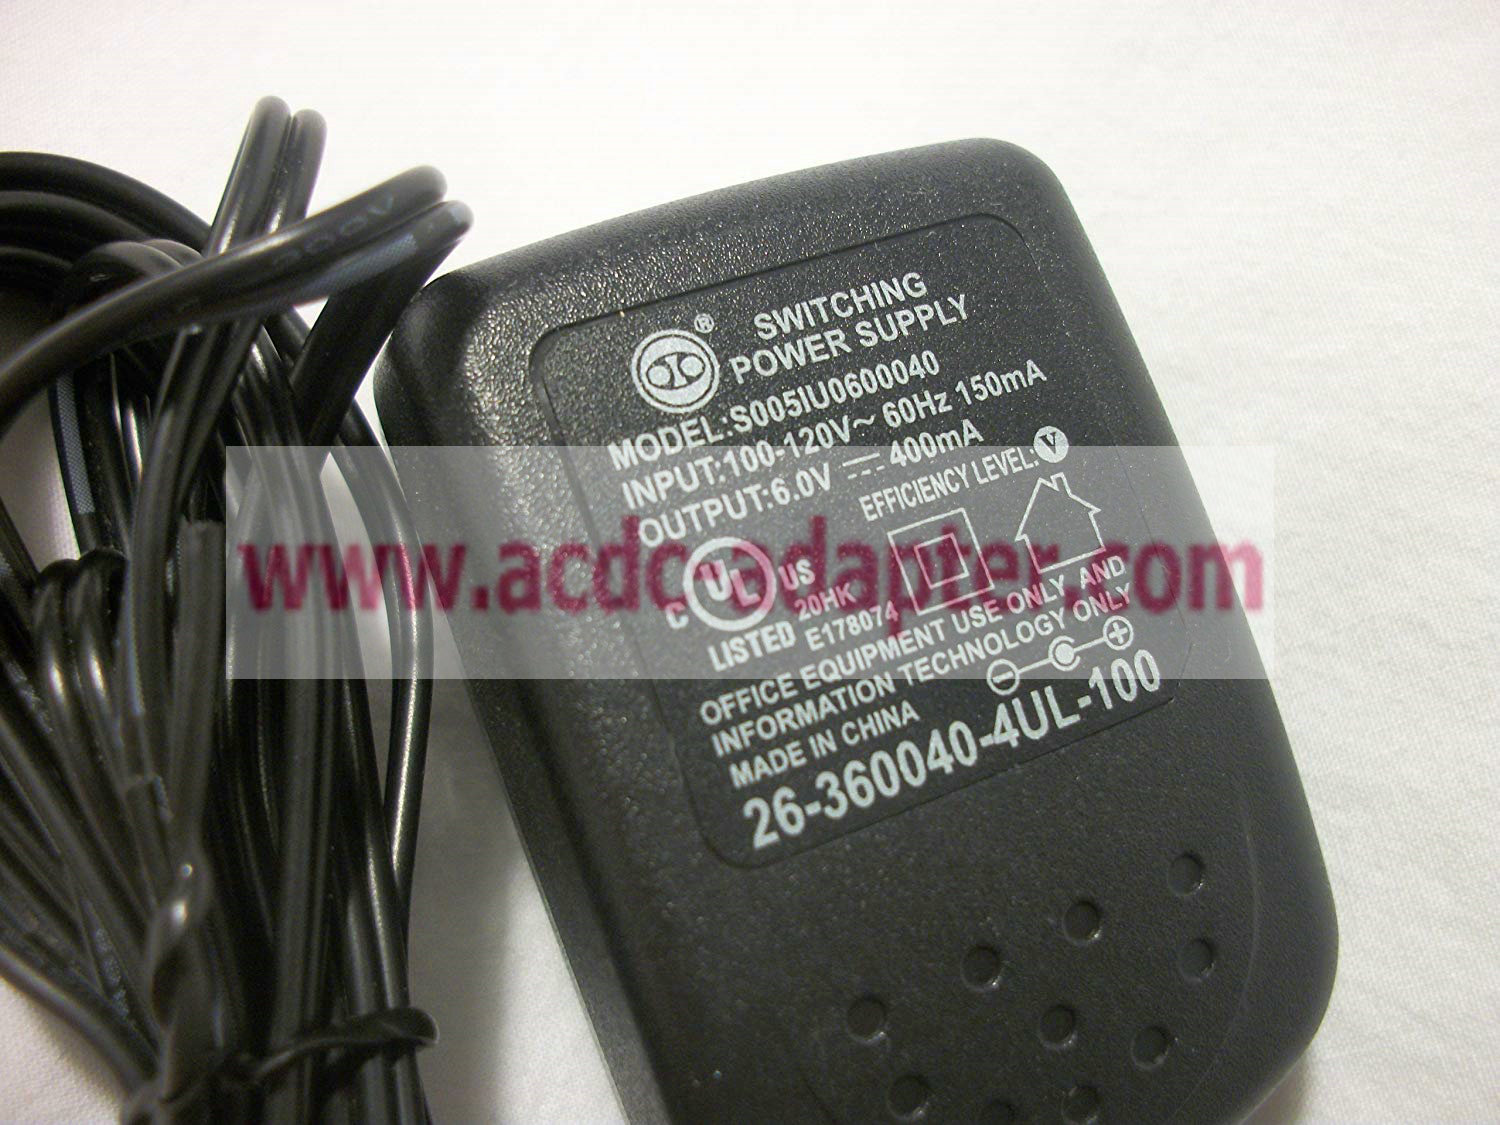 AC Adapter 26-360040-4UL-100 For VTech DM111 DM112 DM223 DM251 DM271 Safe & Sound - Click Image to Close